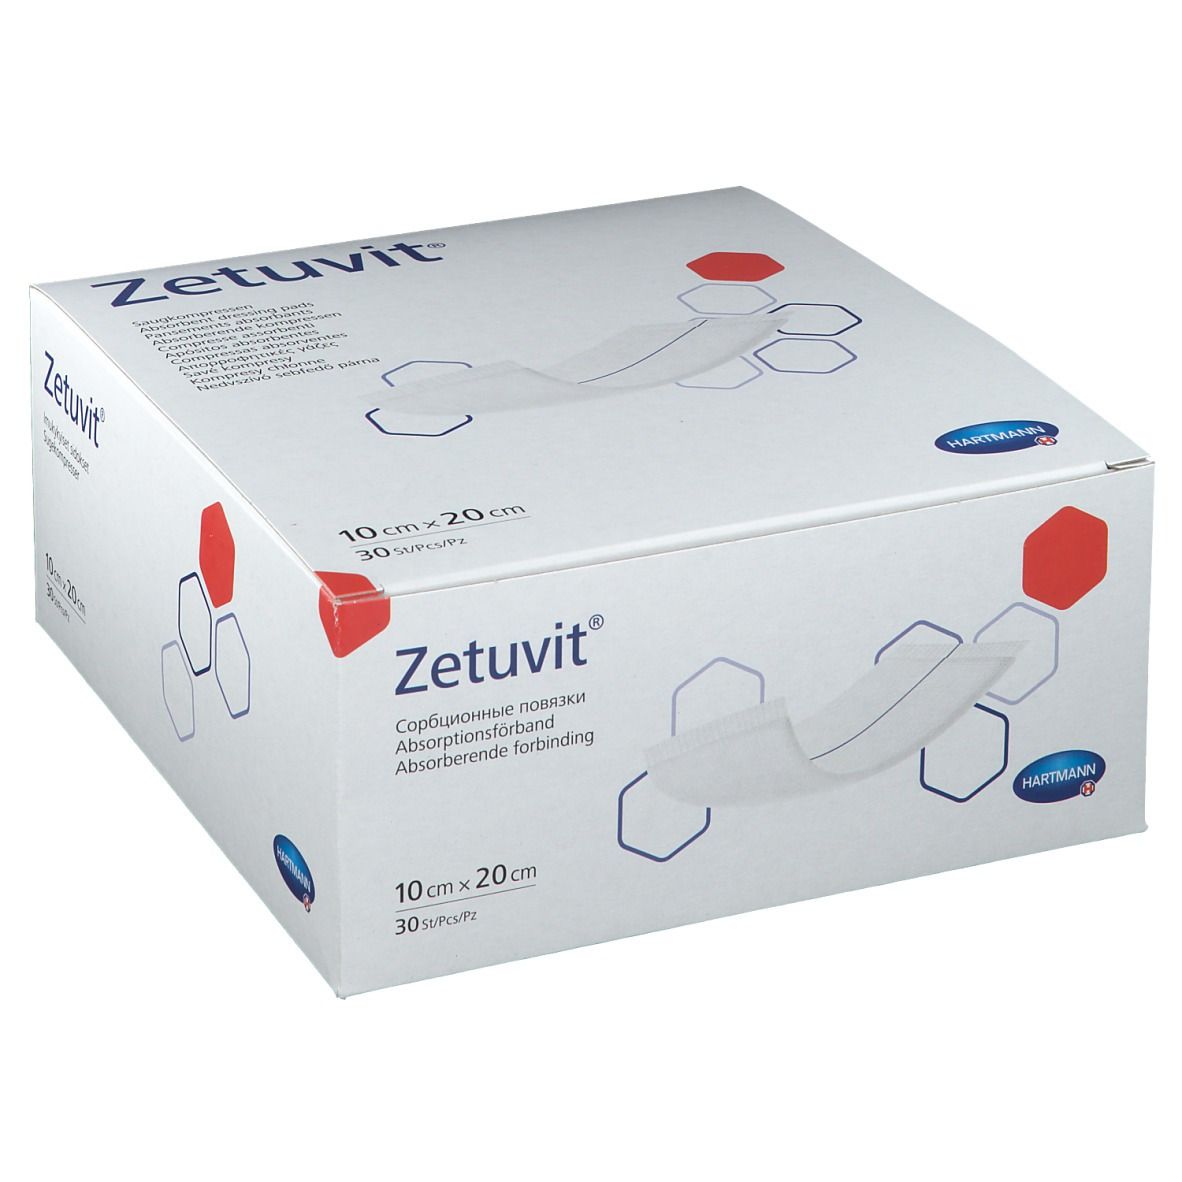 Zetuvit® Saugkompresse unsteril 10 x 20 cm